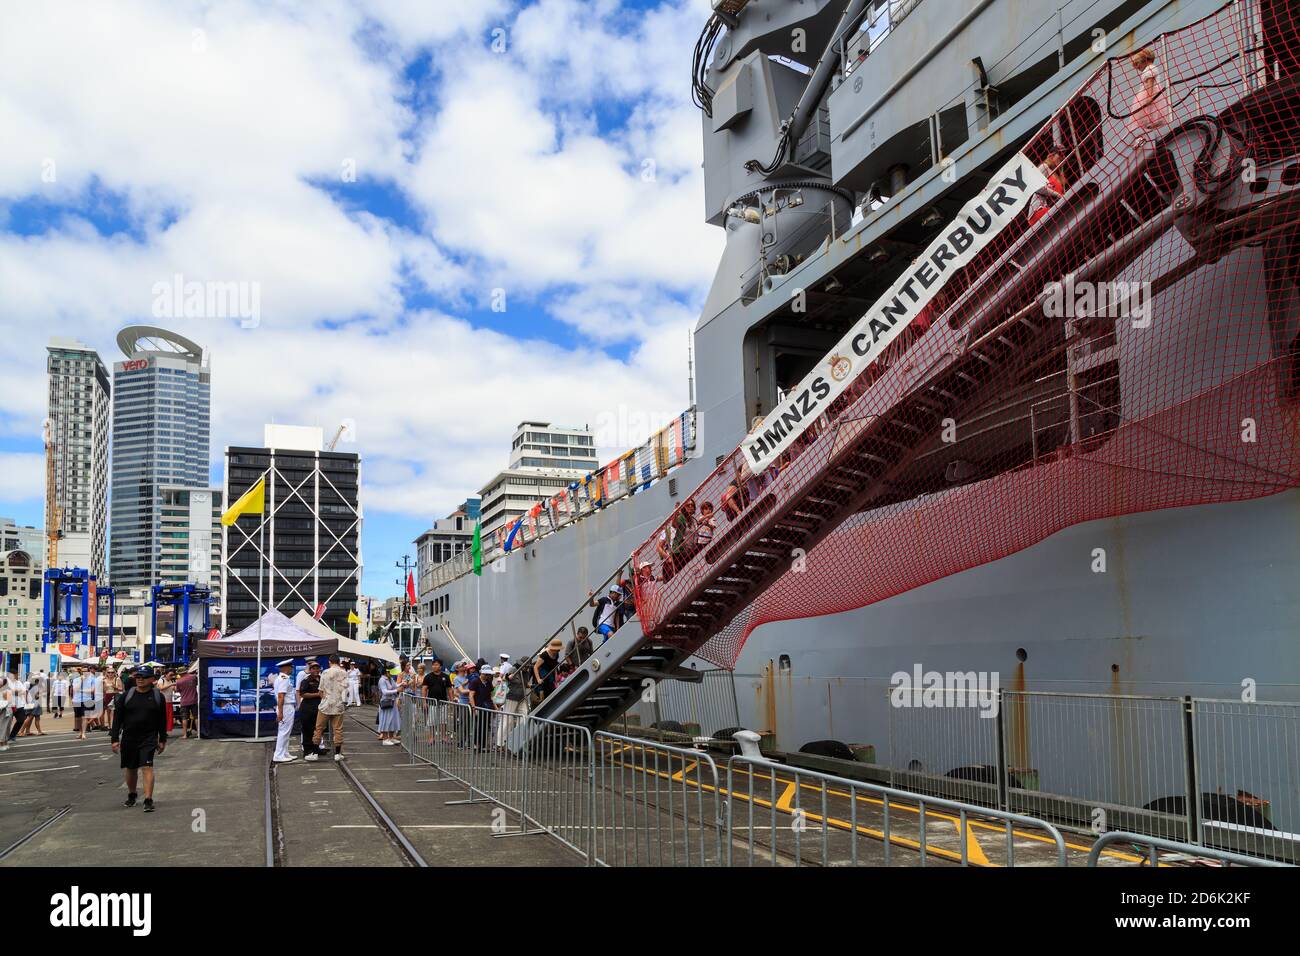 Membri del pubblico imbarco HMAS Canterbury, una nave della Marina della Nuova Zelanda, presso un porto di Auckland aperto giorno. Auckland, Nuova Zelanda, gennaio 16 2019 Foto Stock